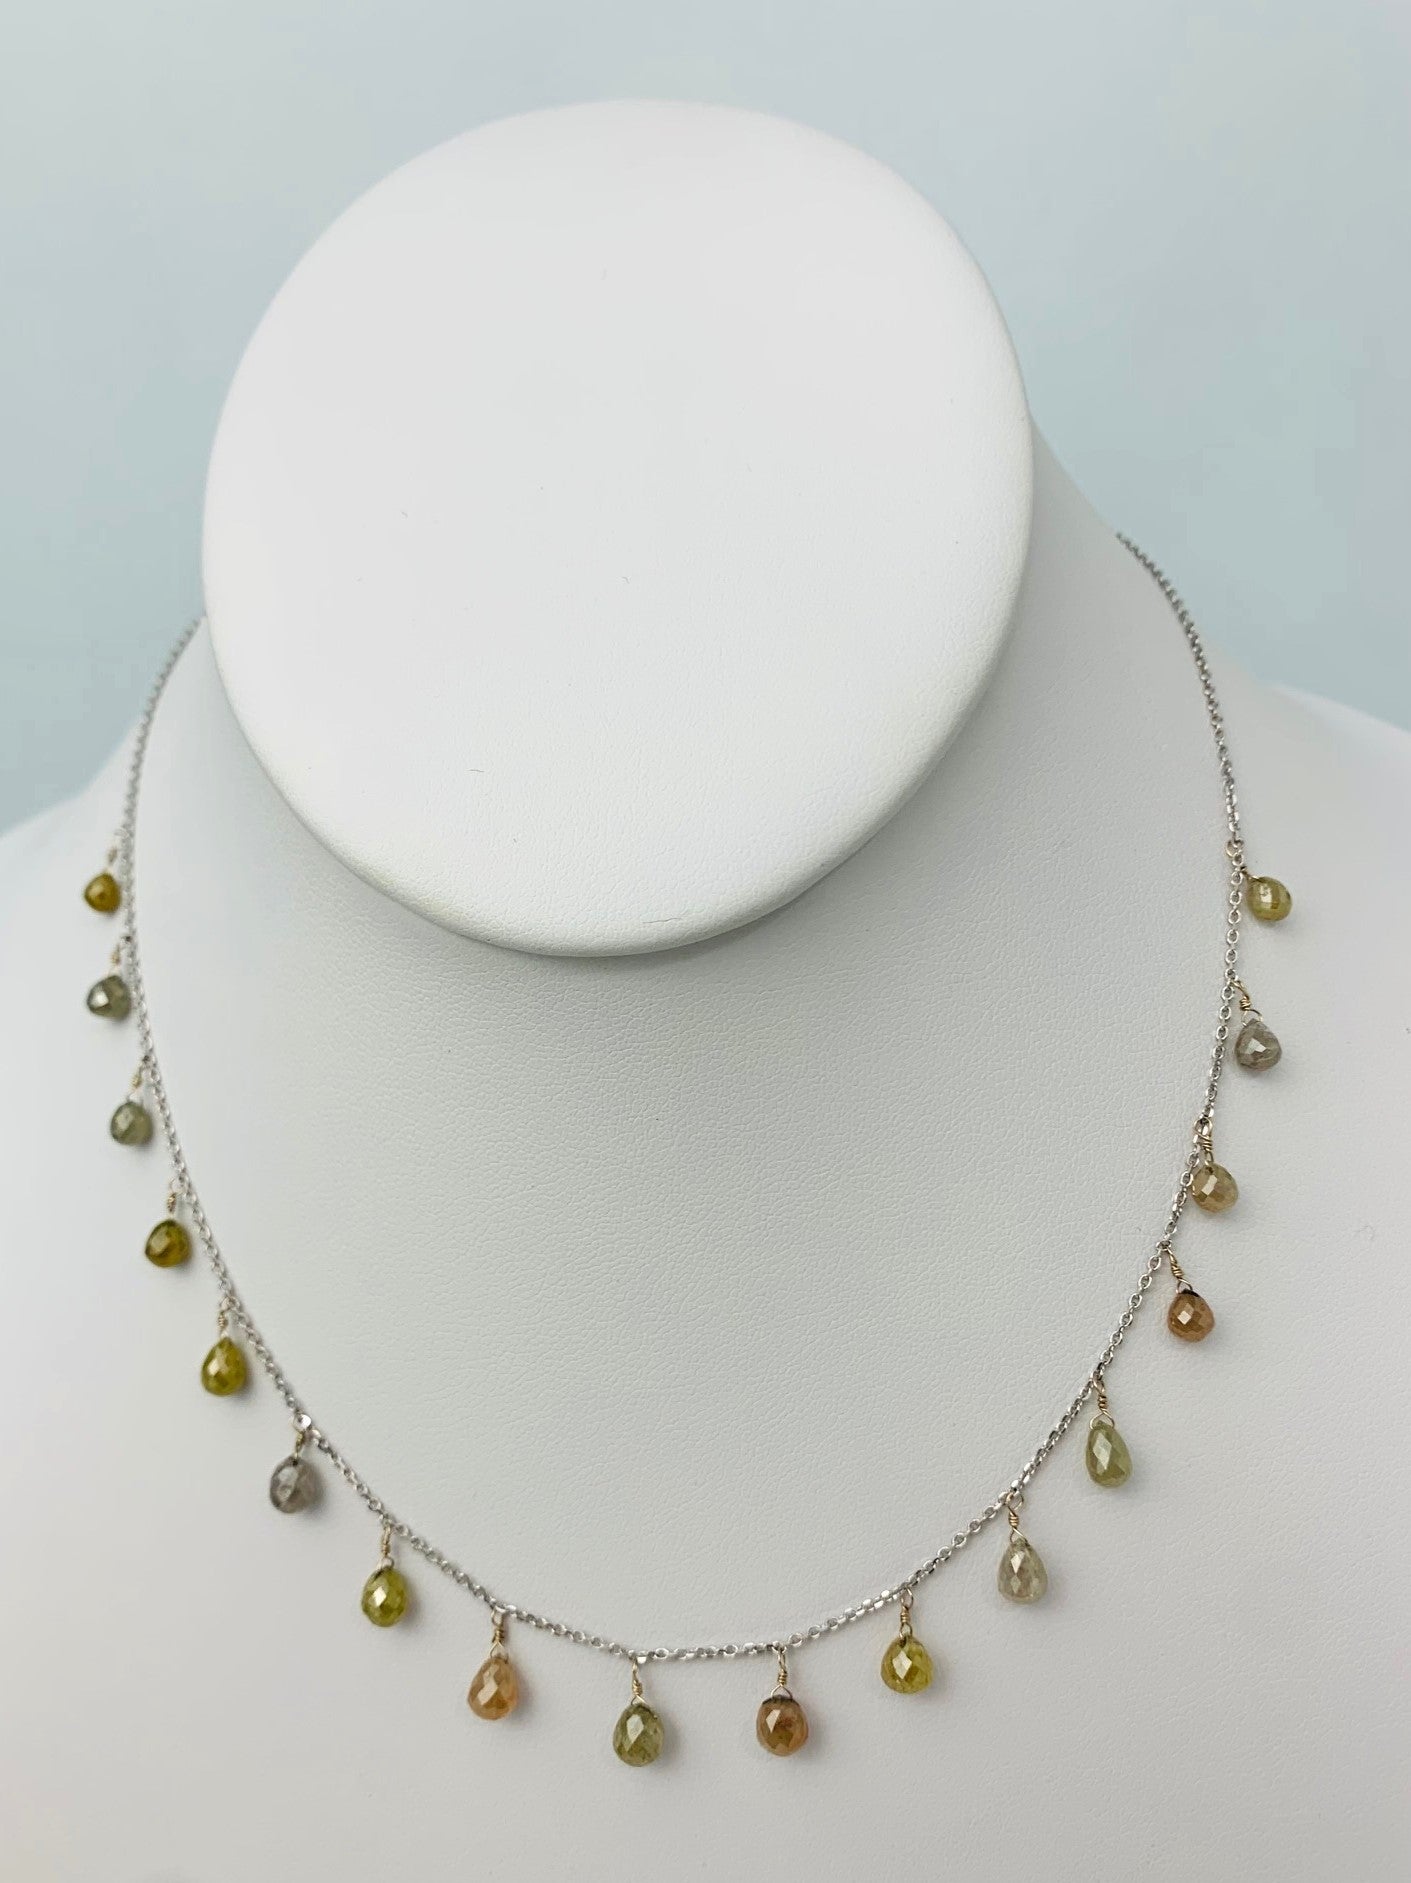 16" Rustic Earth Tone Diamond Dangle Necklace in 14KW - NCK-307-DNGDIA14W-ERTH-16